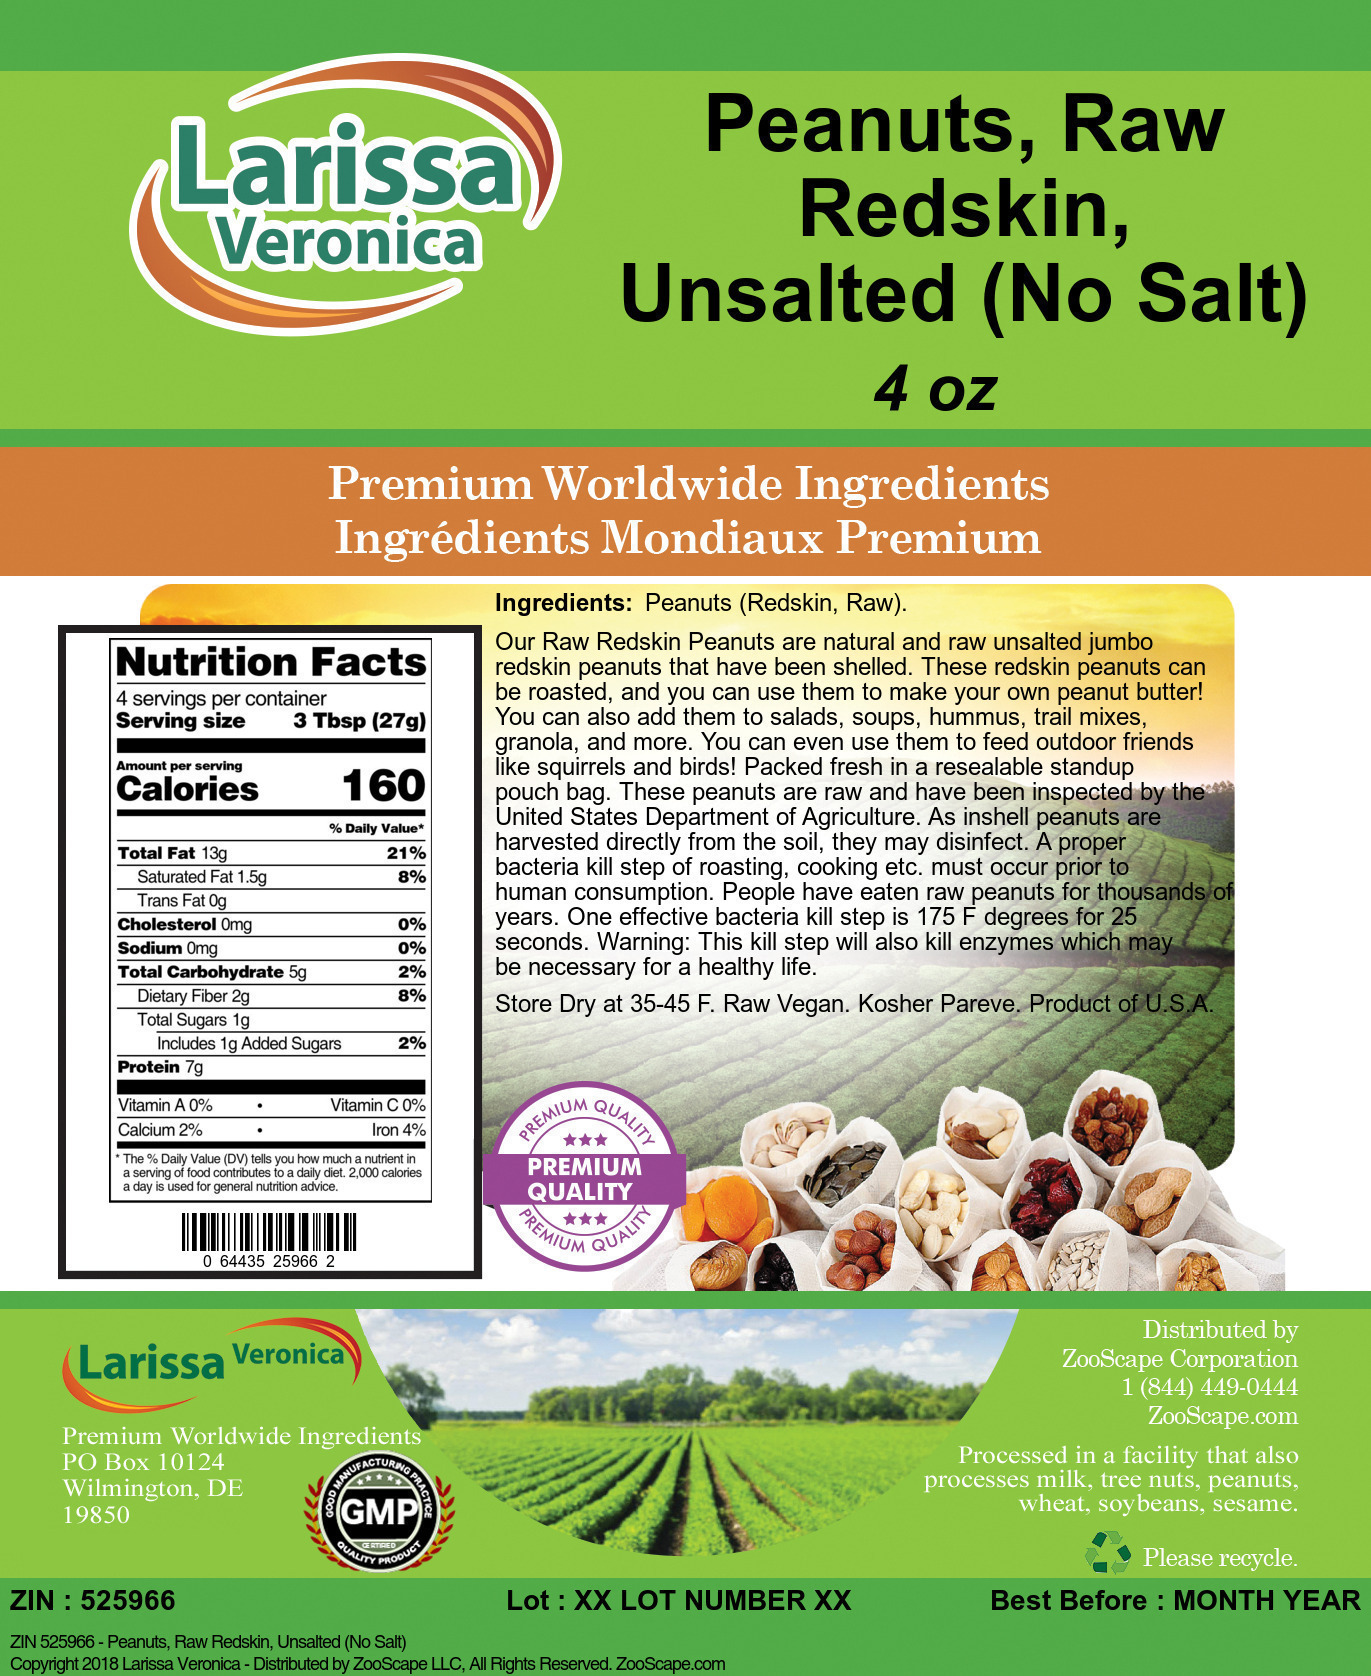 Peanuts, Raw Redskin, Unsalted (No Salt) - Label